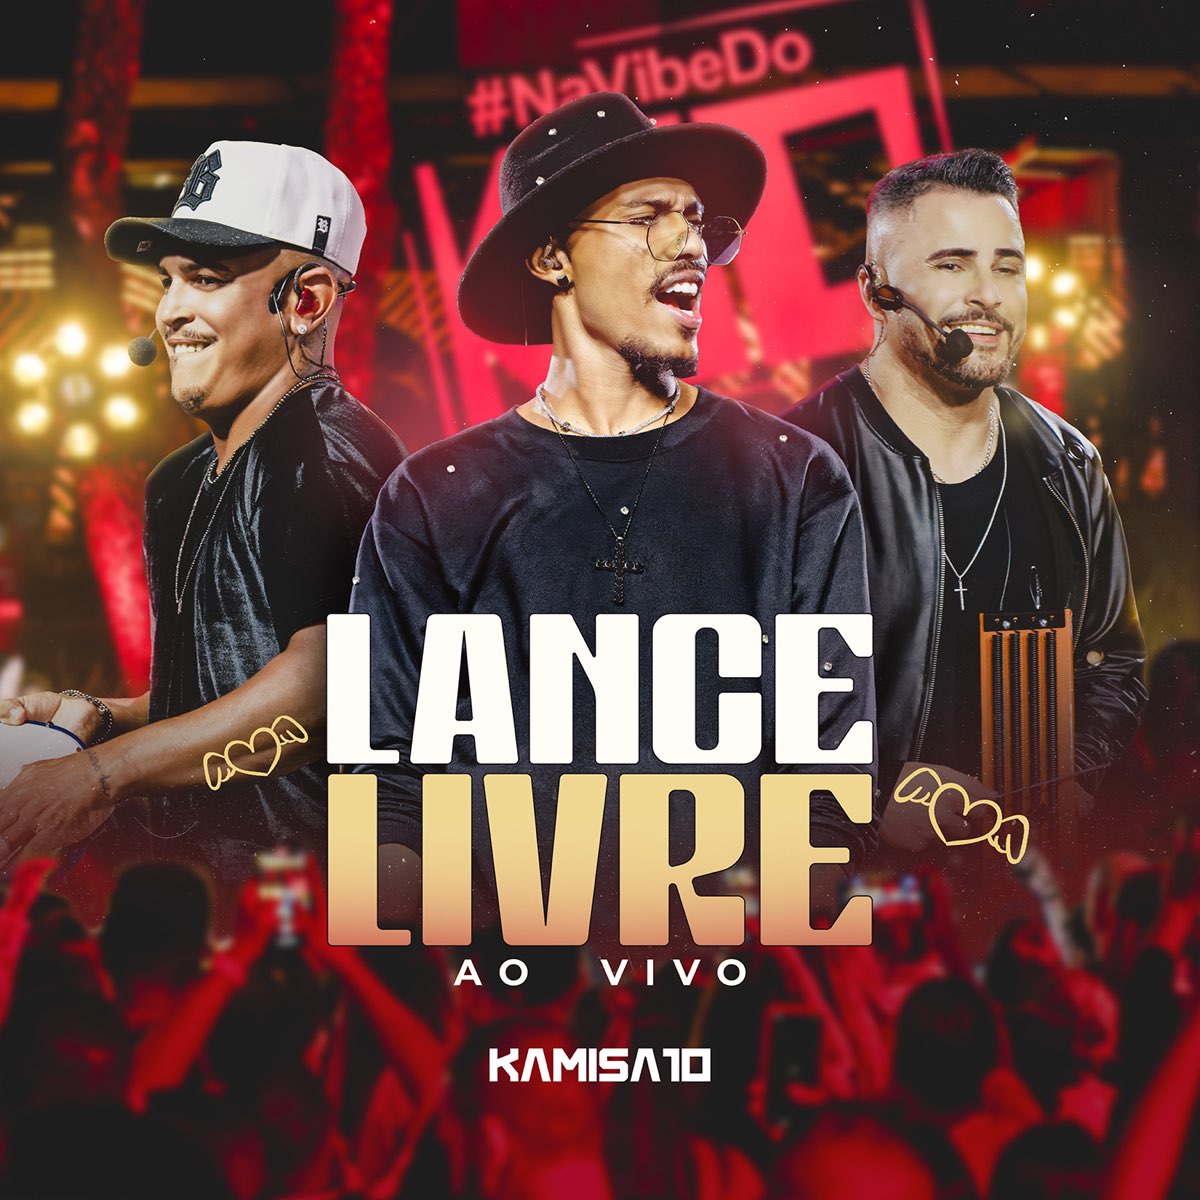 Lance Livre (Ao vivo) - Single - Album by Kamisa 10 - Apple Music